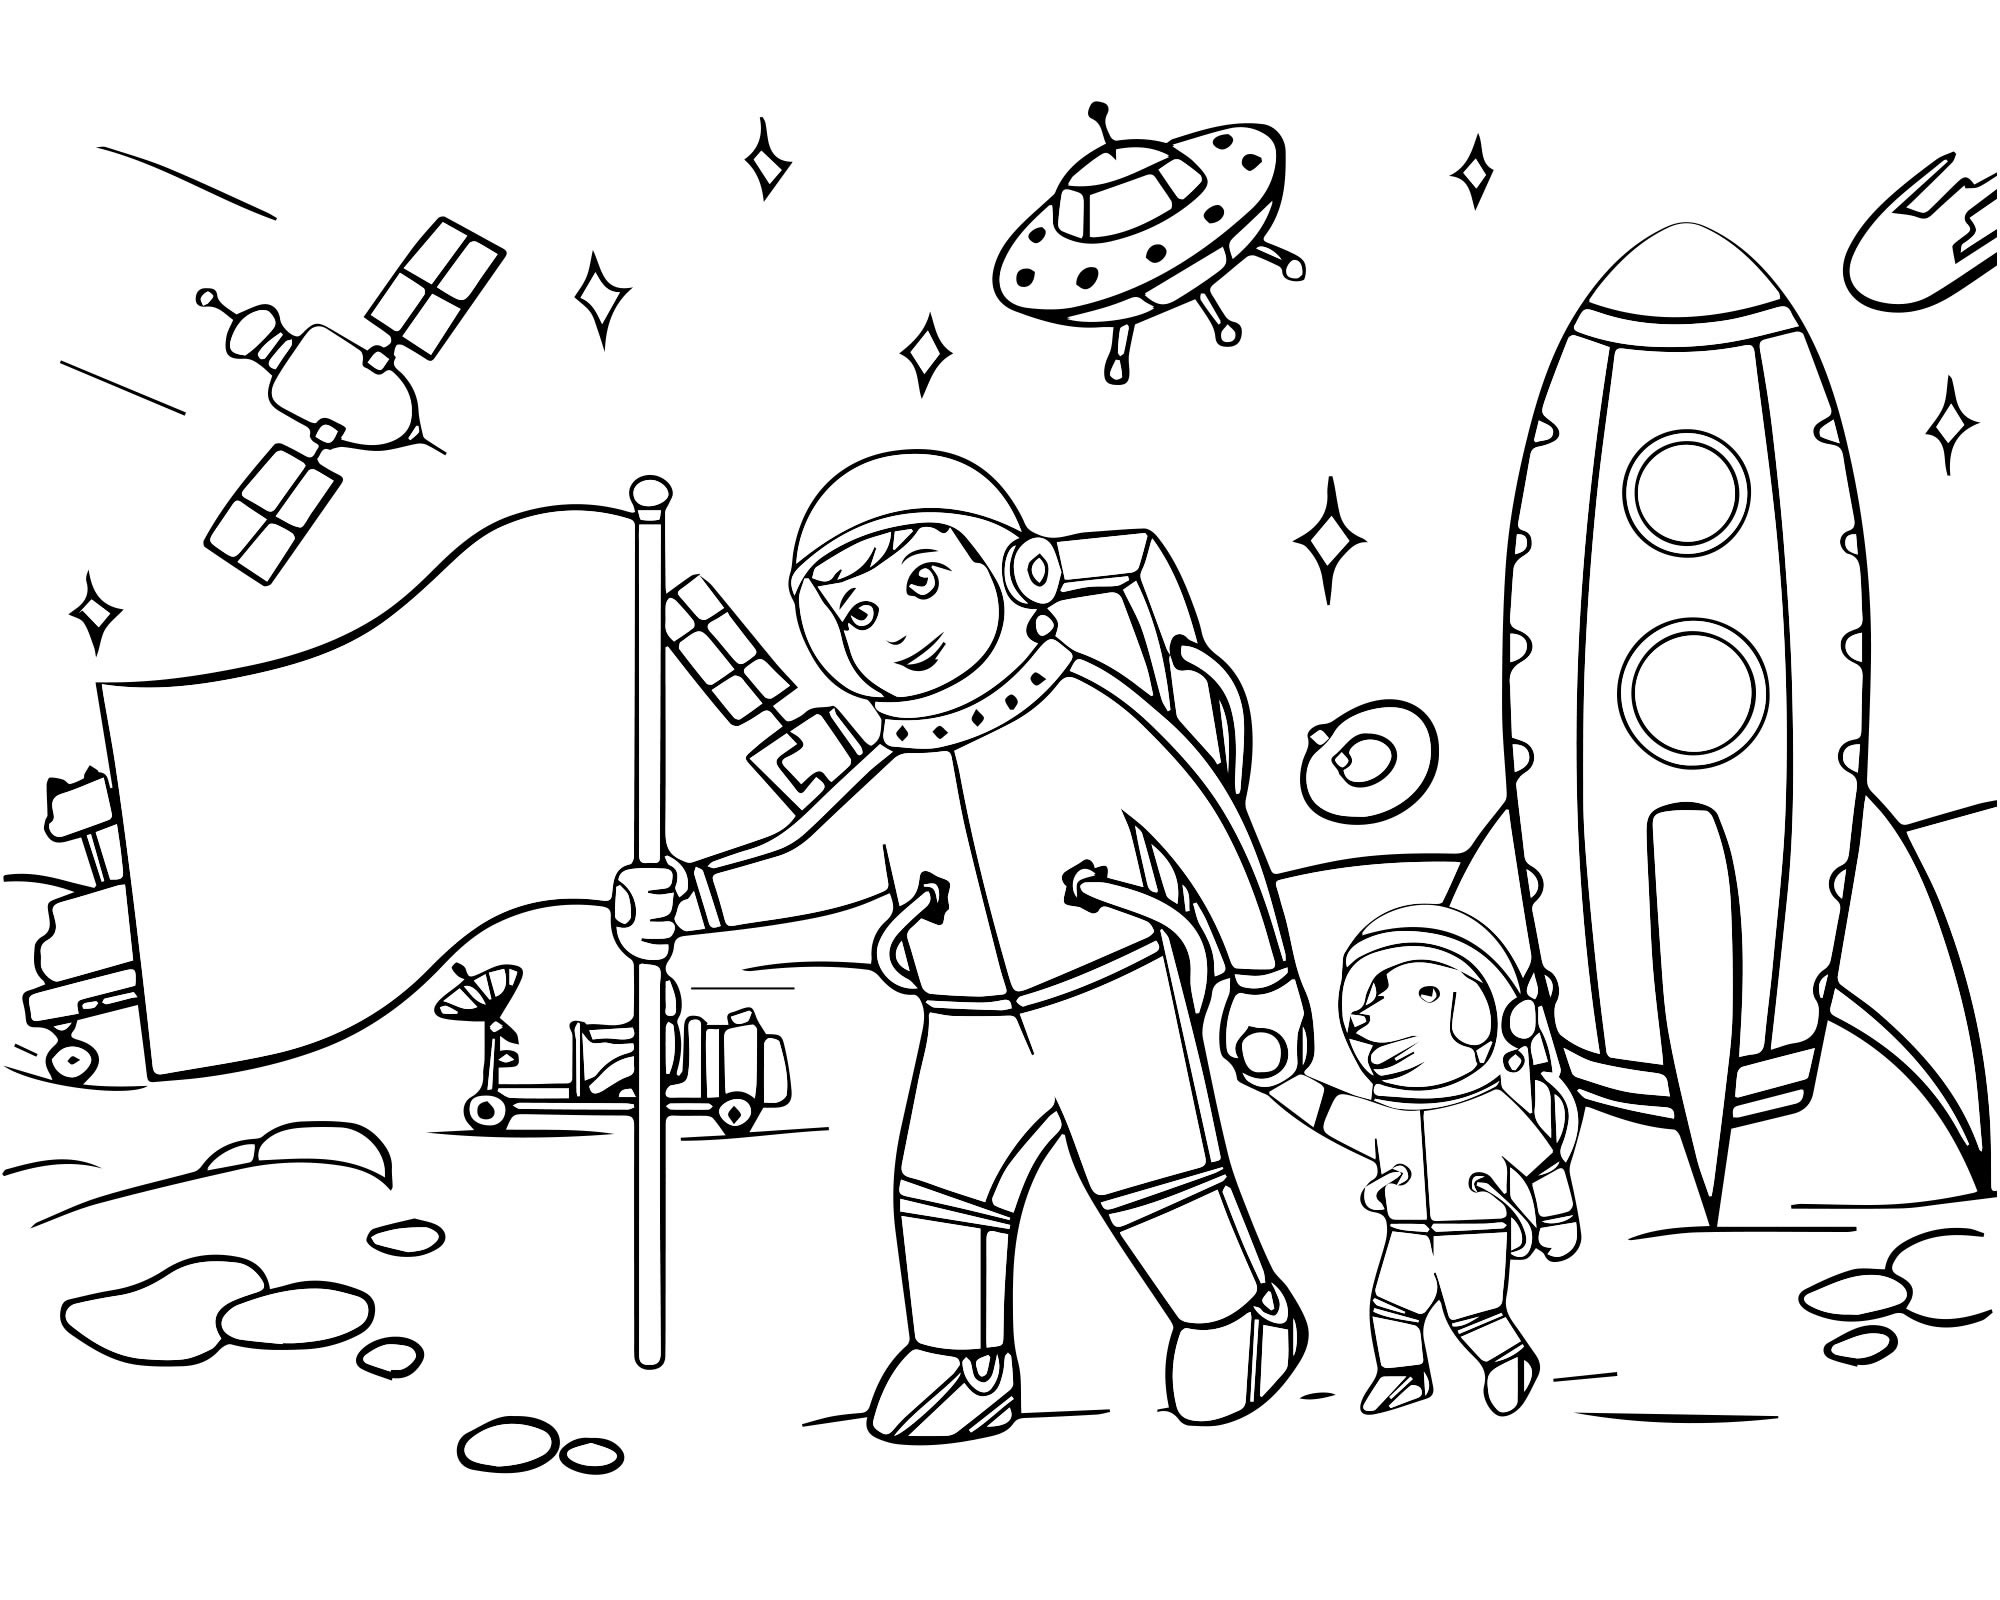 День космонавтики для детей 1 класса. Раскраска. В космосе. Космос раскраска для детей. Раскраска день космонавтики для детей. Космические раскраски для детей.